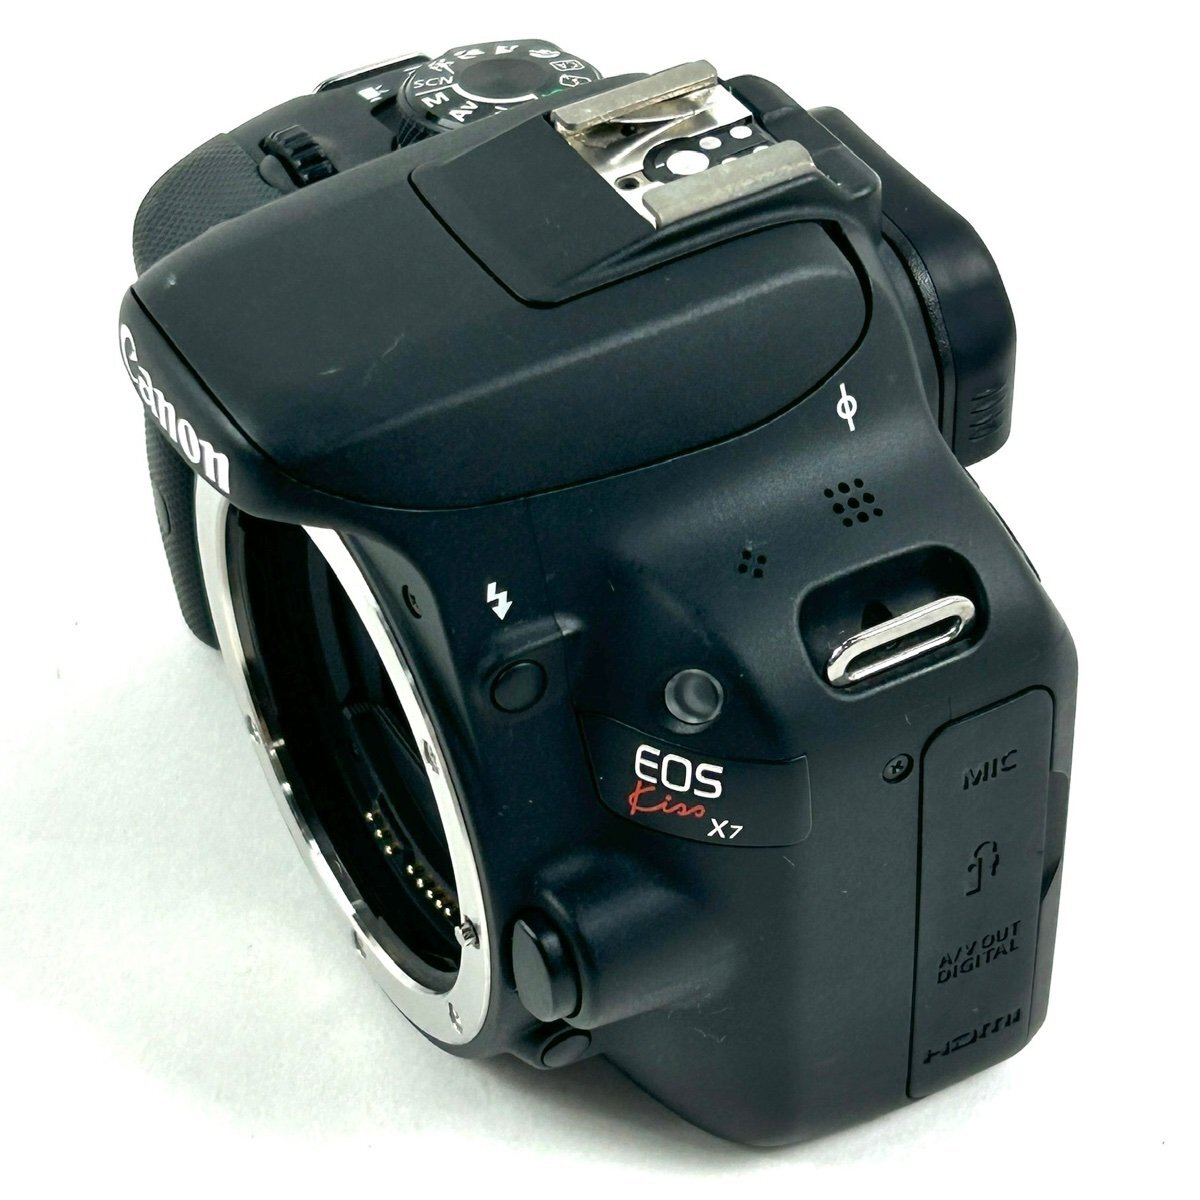 キヤノン Canon EOS Kiss X7 レンズキット デジタル 一眼レフカメラ 【中古】_バイセル 31051_2